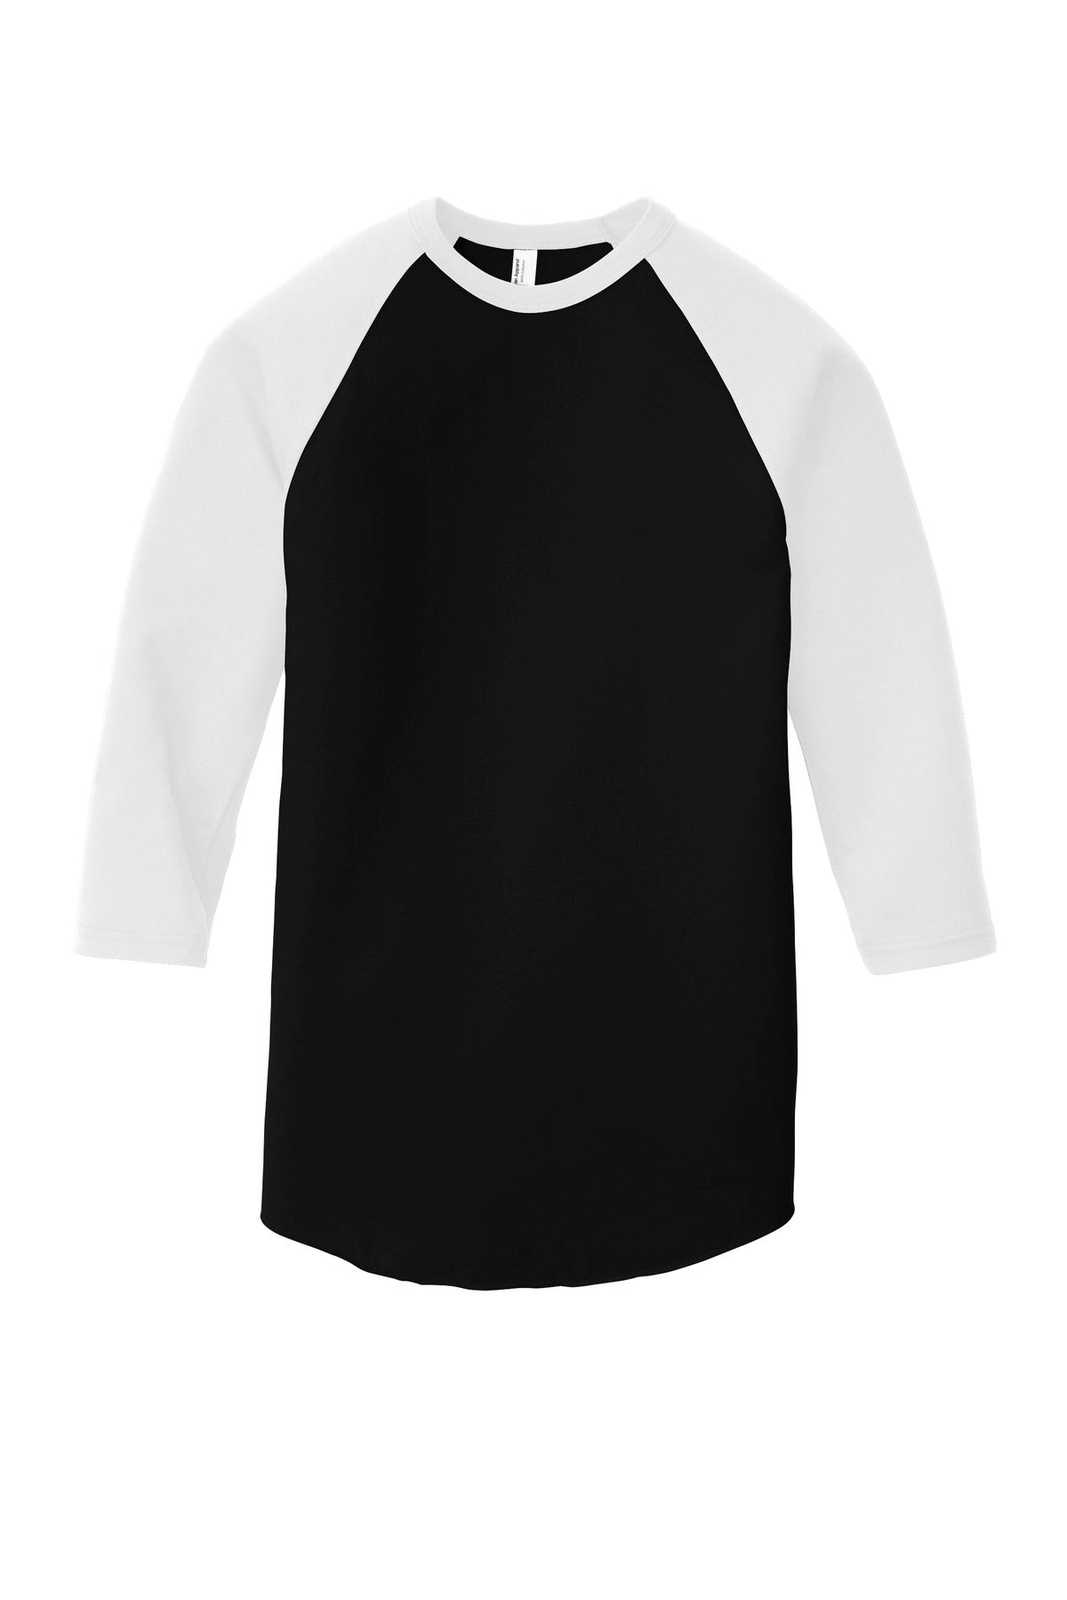 American Apparel BB453W Poly-Cotton 3/4-Sleeve Raglan T-Shirt - Black White - HIT a Double